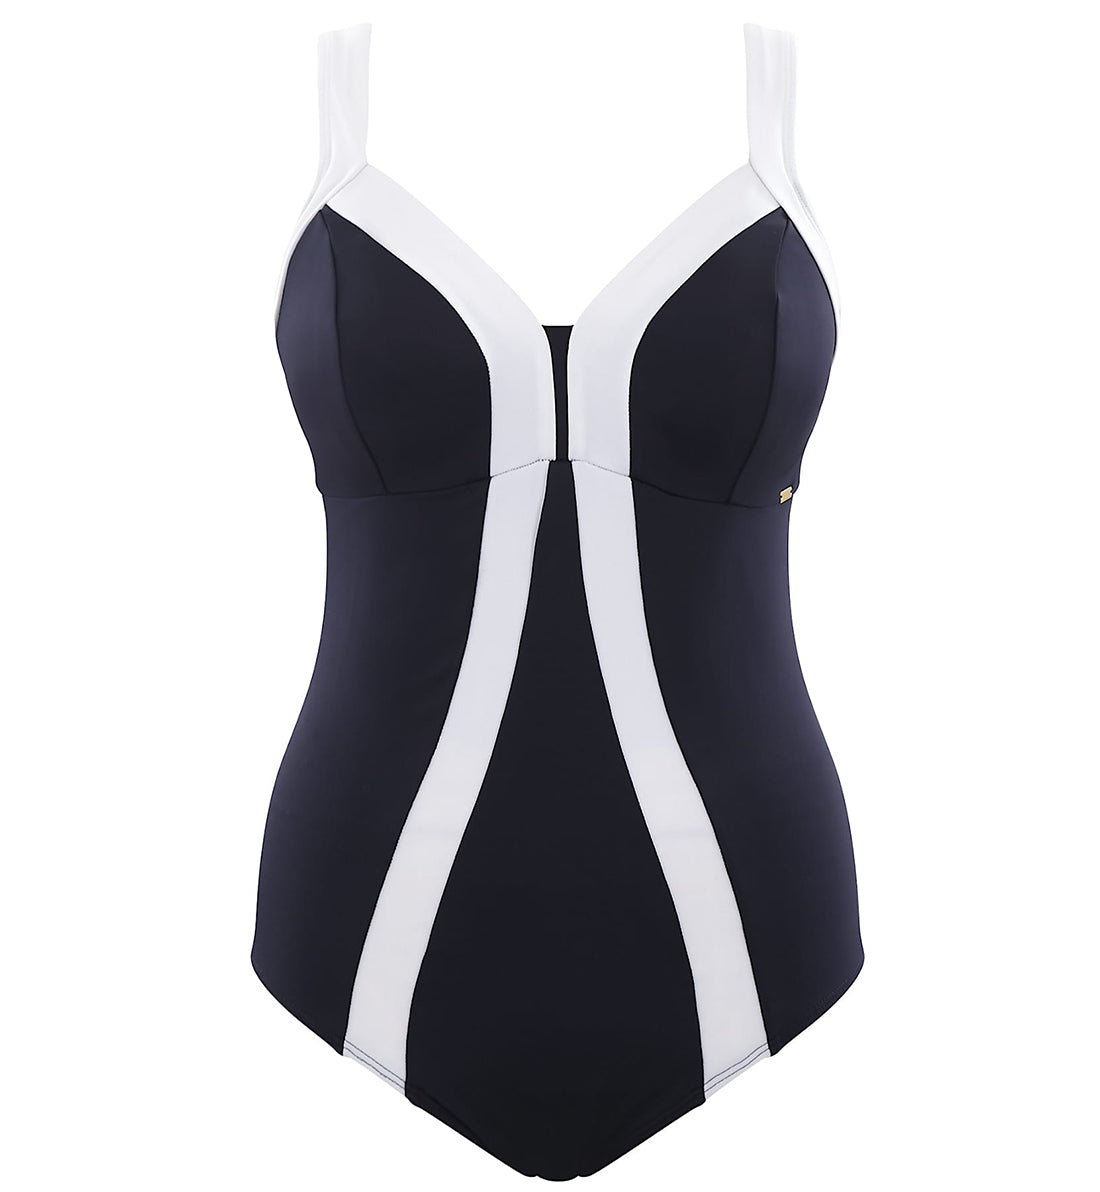 Panache Catarina One-Piece Underwire Swimsuit (SW1350),34K,Midnight/White - Midnight/White,34K